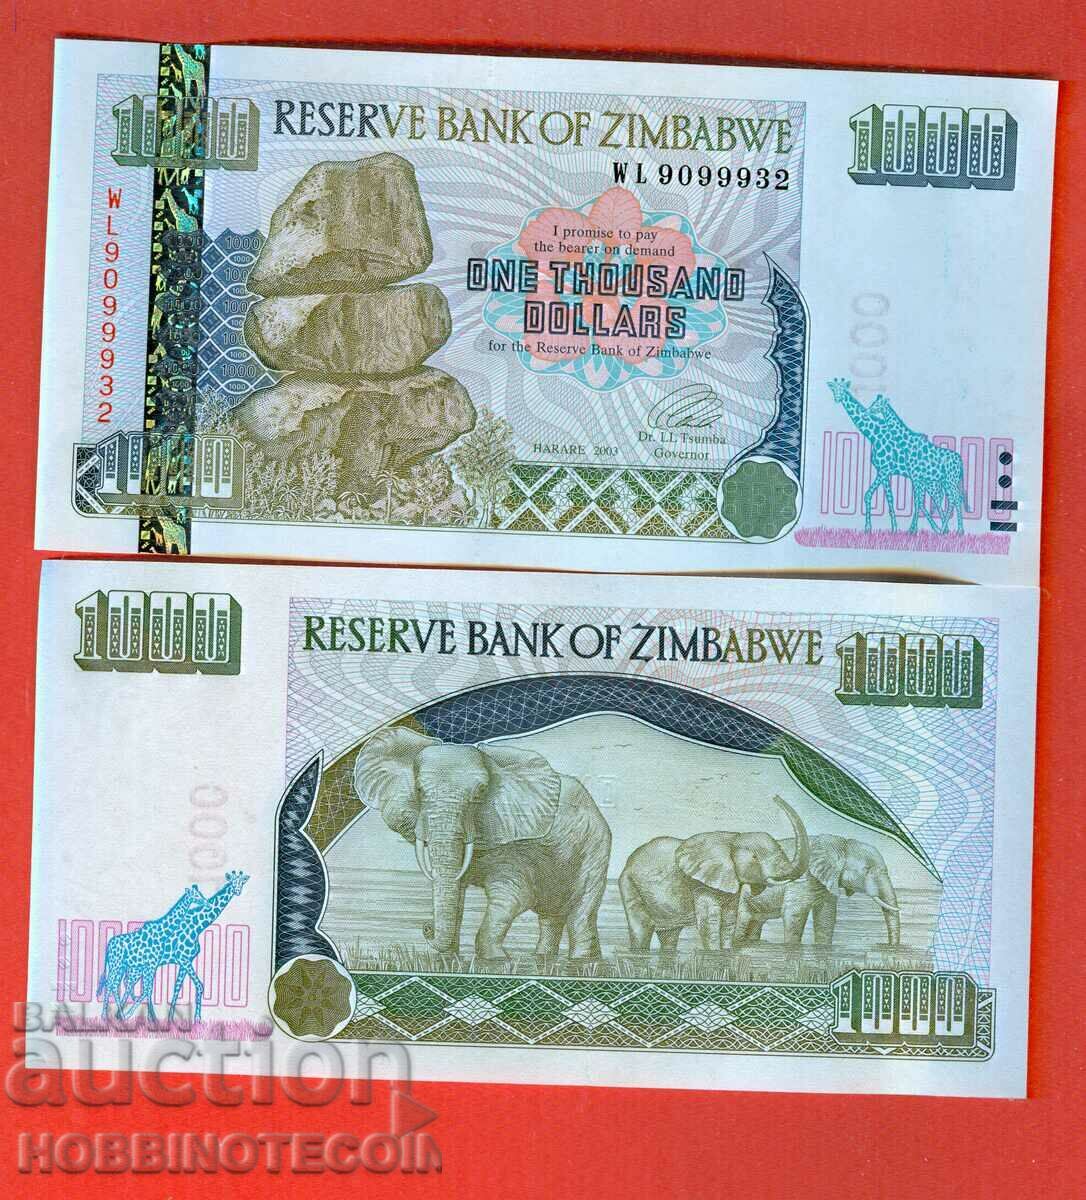 ZIMBABWE ZIMBABWE 1000 USD - 1000 USD emisiune nouă 2003 NOU UNC